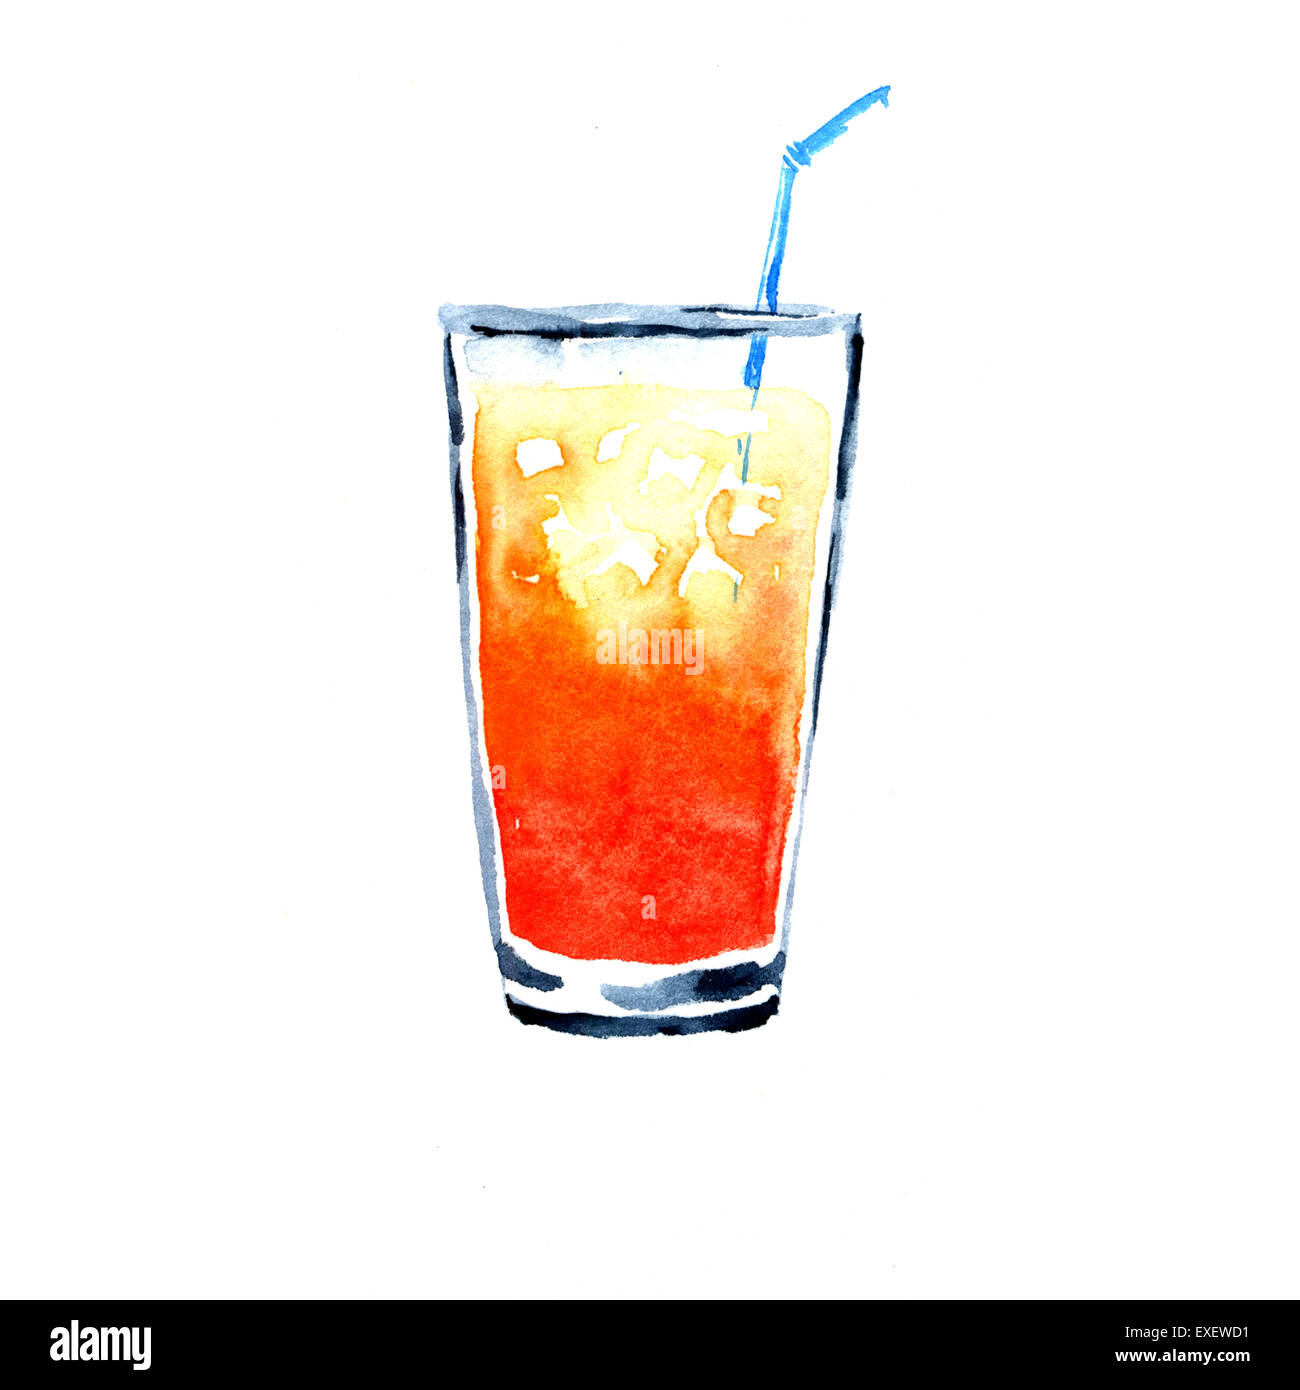 Le jus d'Orange. Illustration à l'aquarelle sur fond blanc Banque D'Images